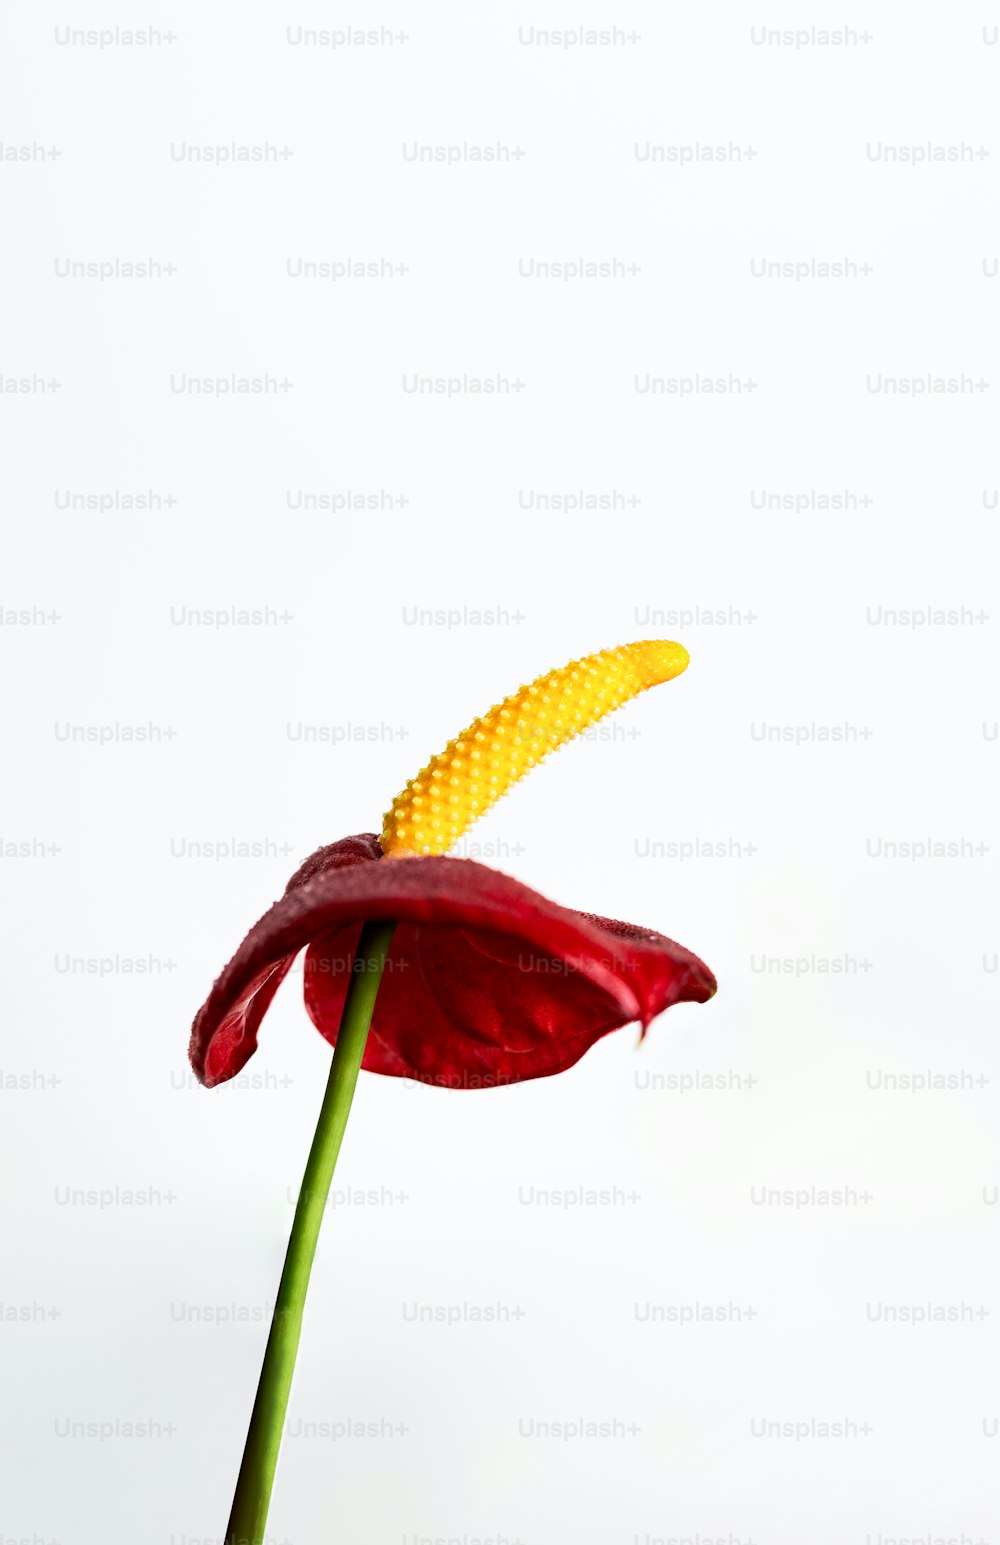 un singolo fiore rosso con un gambo giallo